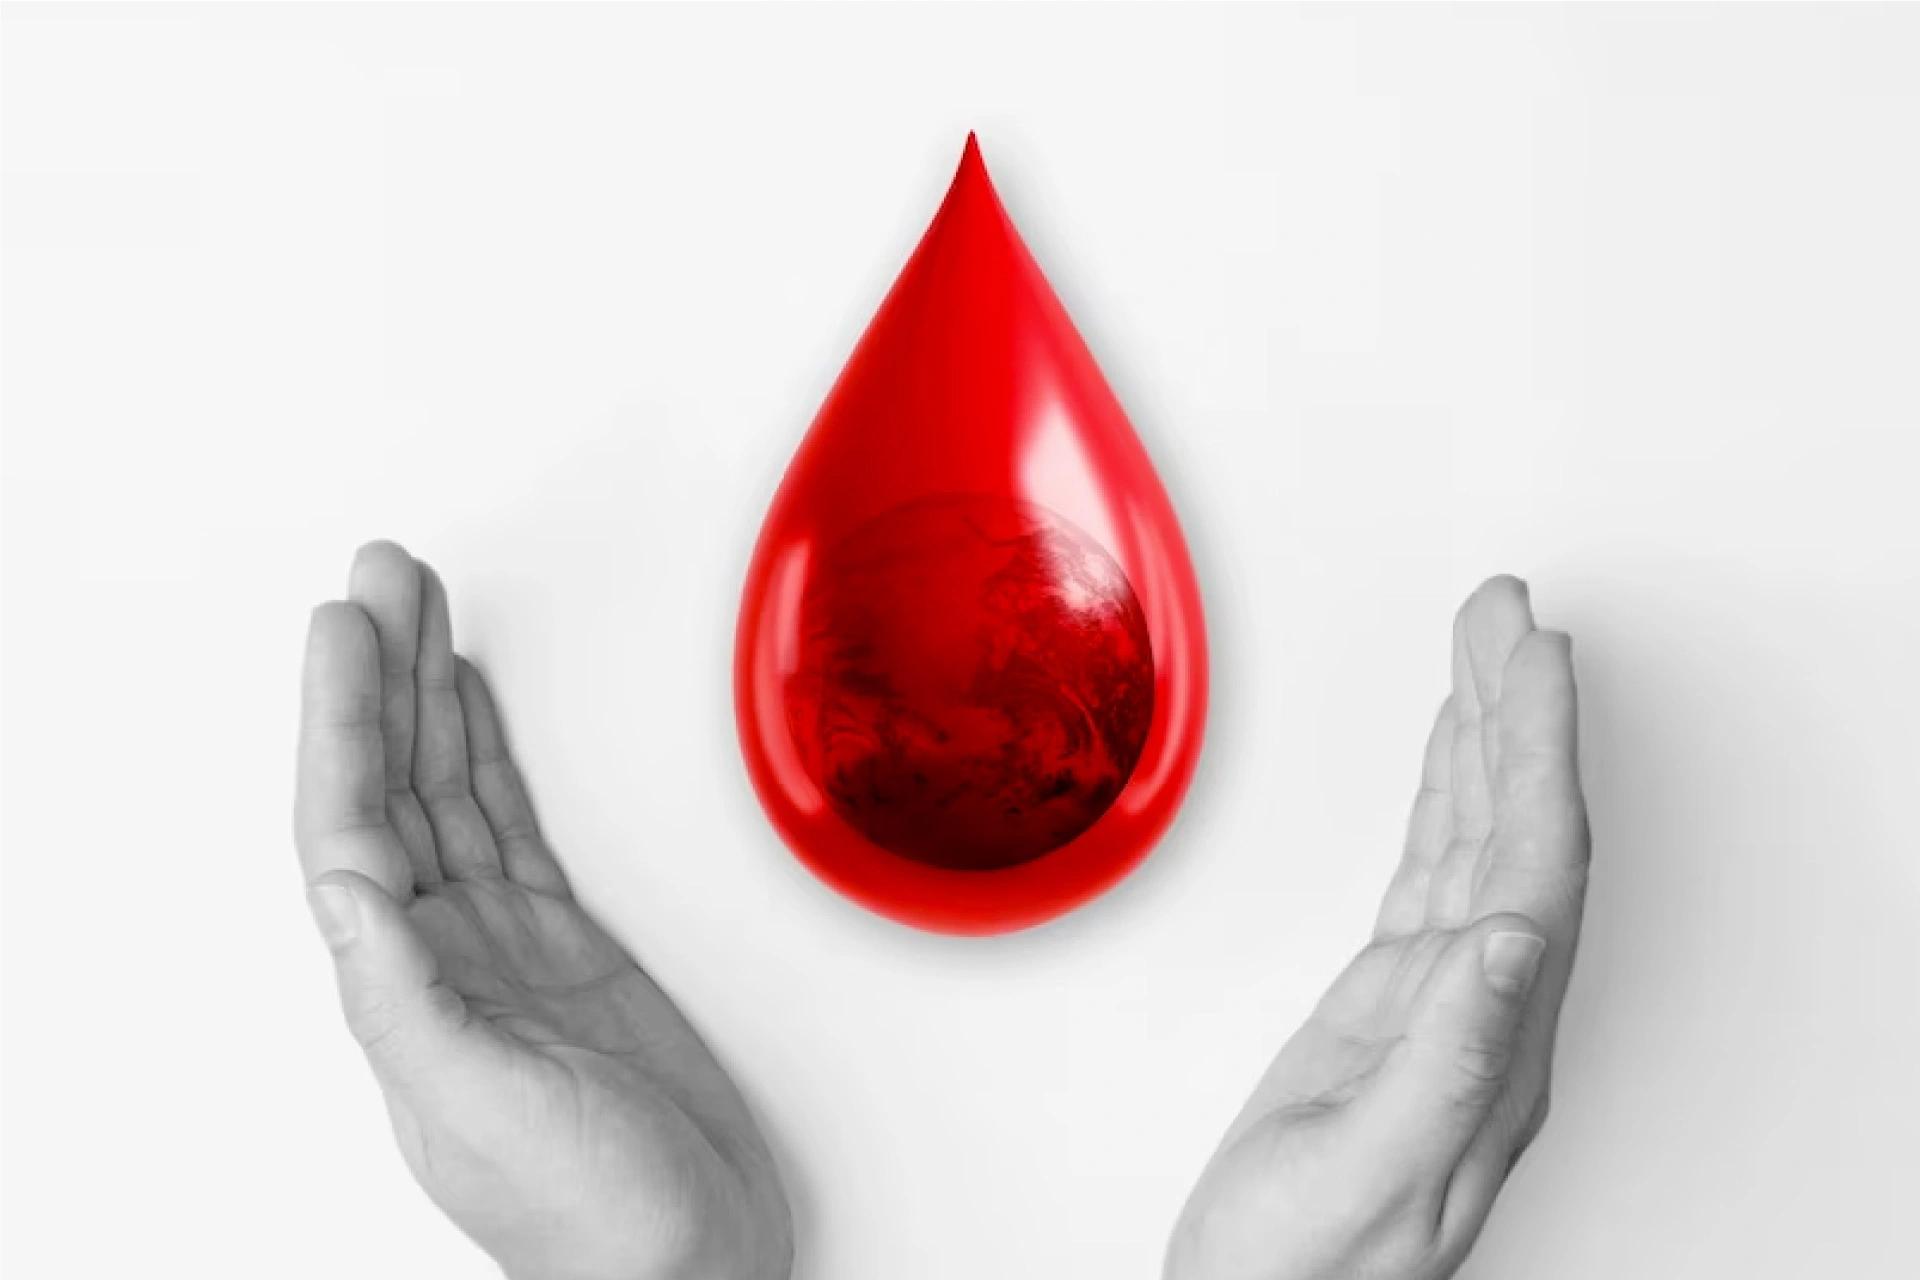 सार्वभौमिक रक्तदाता प्रकार को समझने के लिए युक्तियाँ